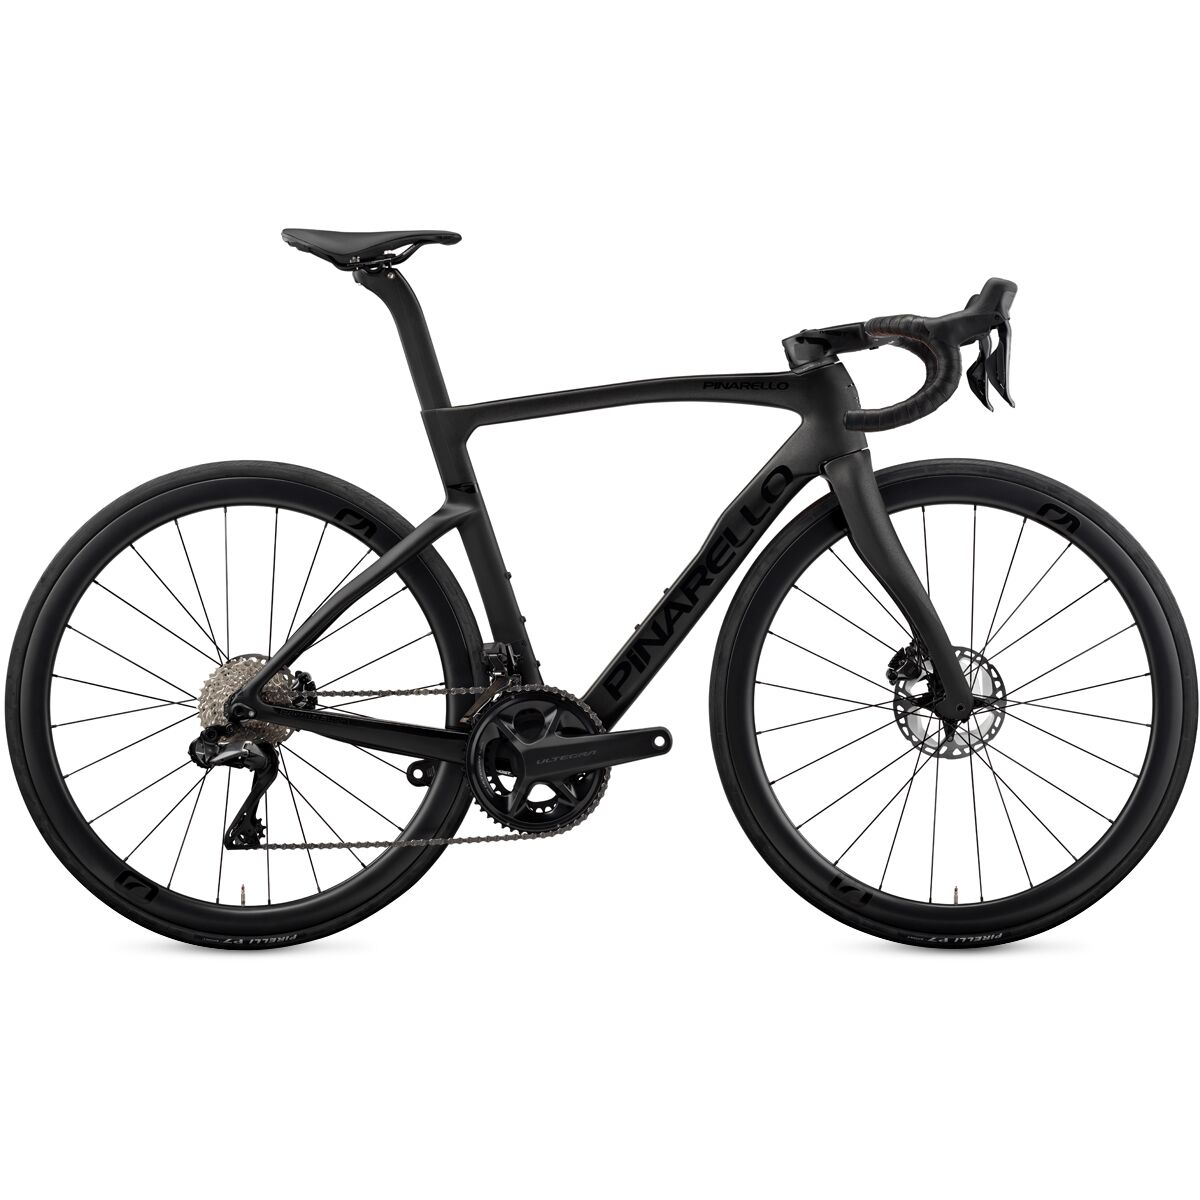 Pinarello F7 Ultegra Di2 Carbon Wheel Road Bike Razor Black, 57.5cm -  D1648170163-00017